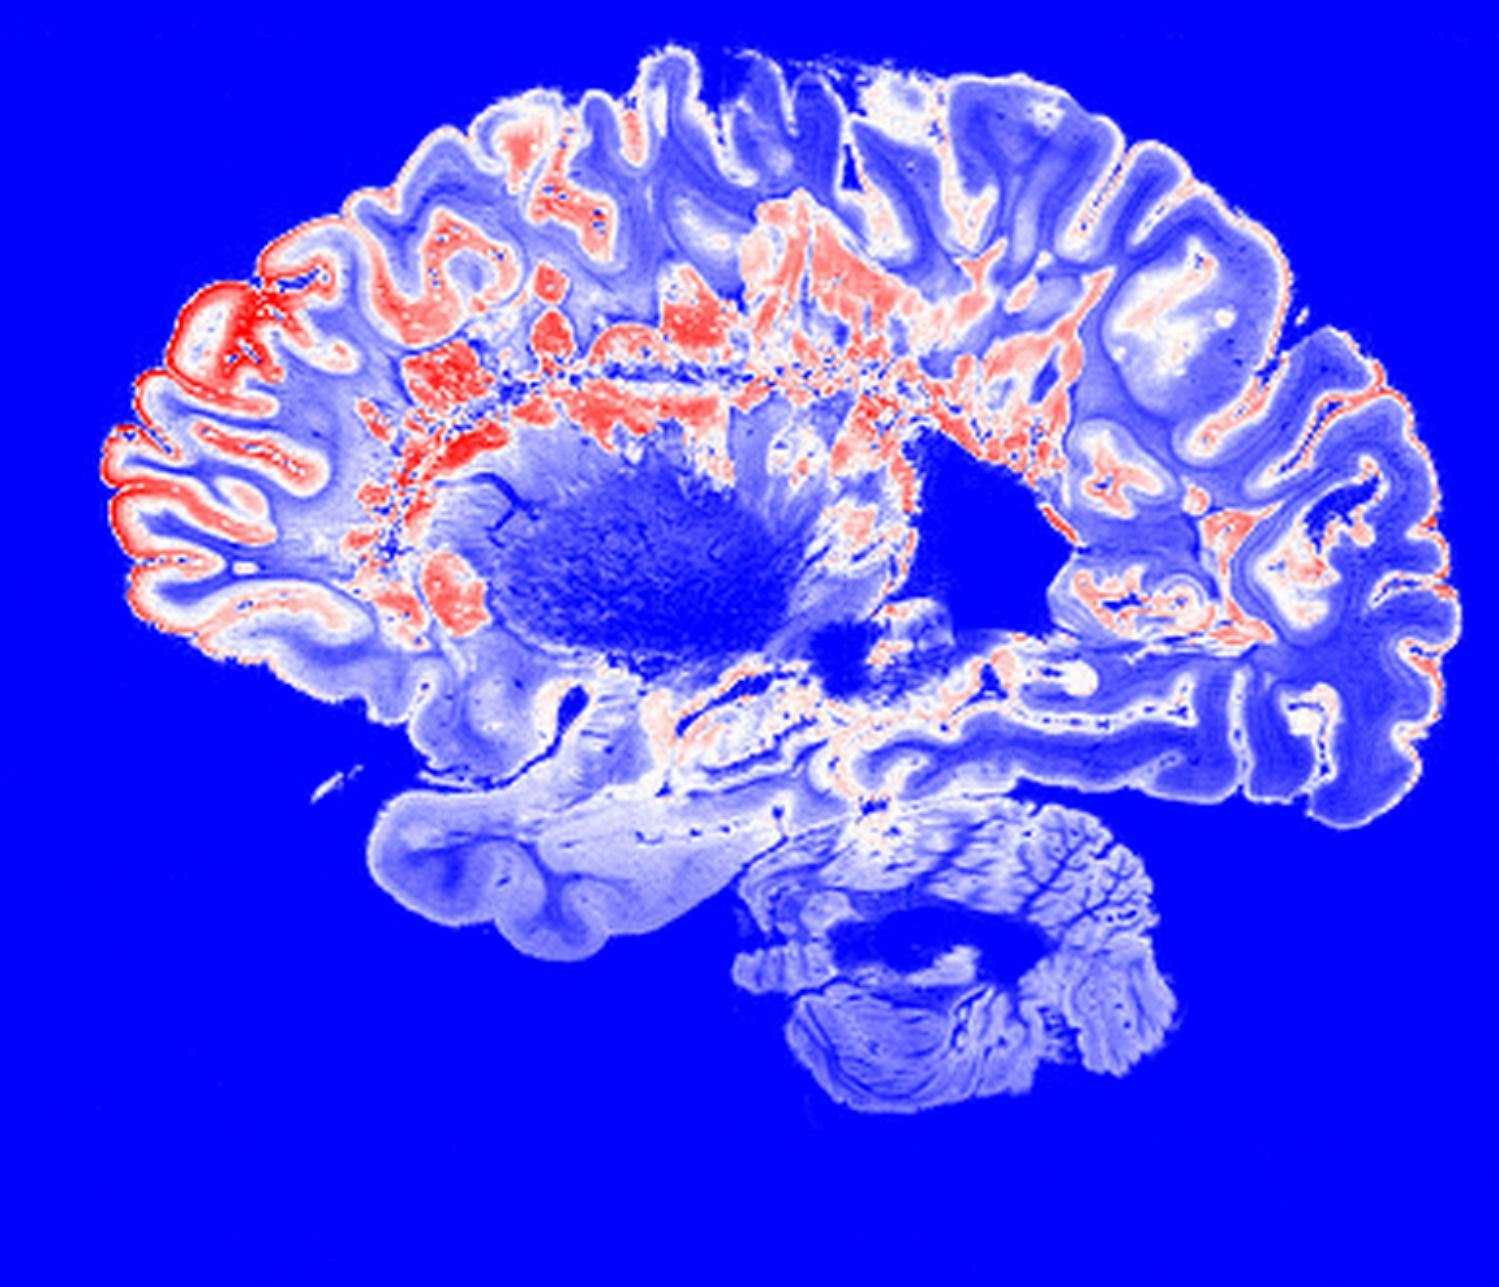 MRI scan of a brain